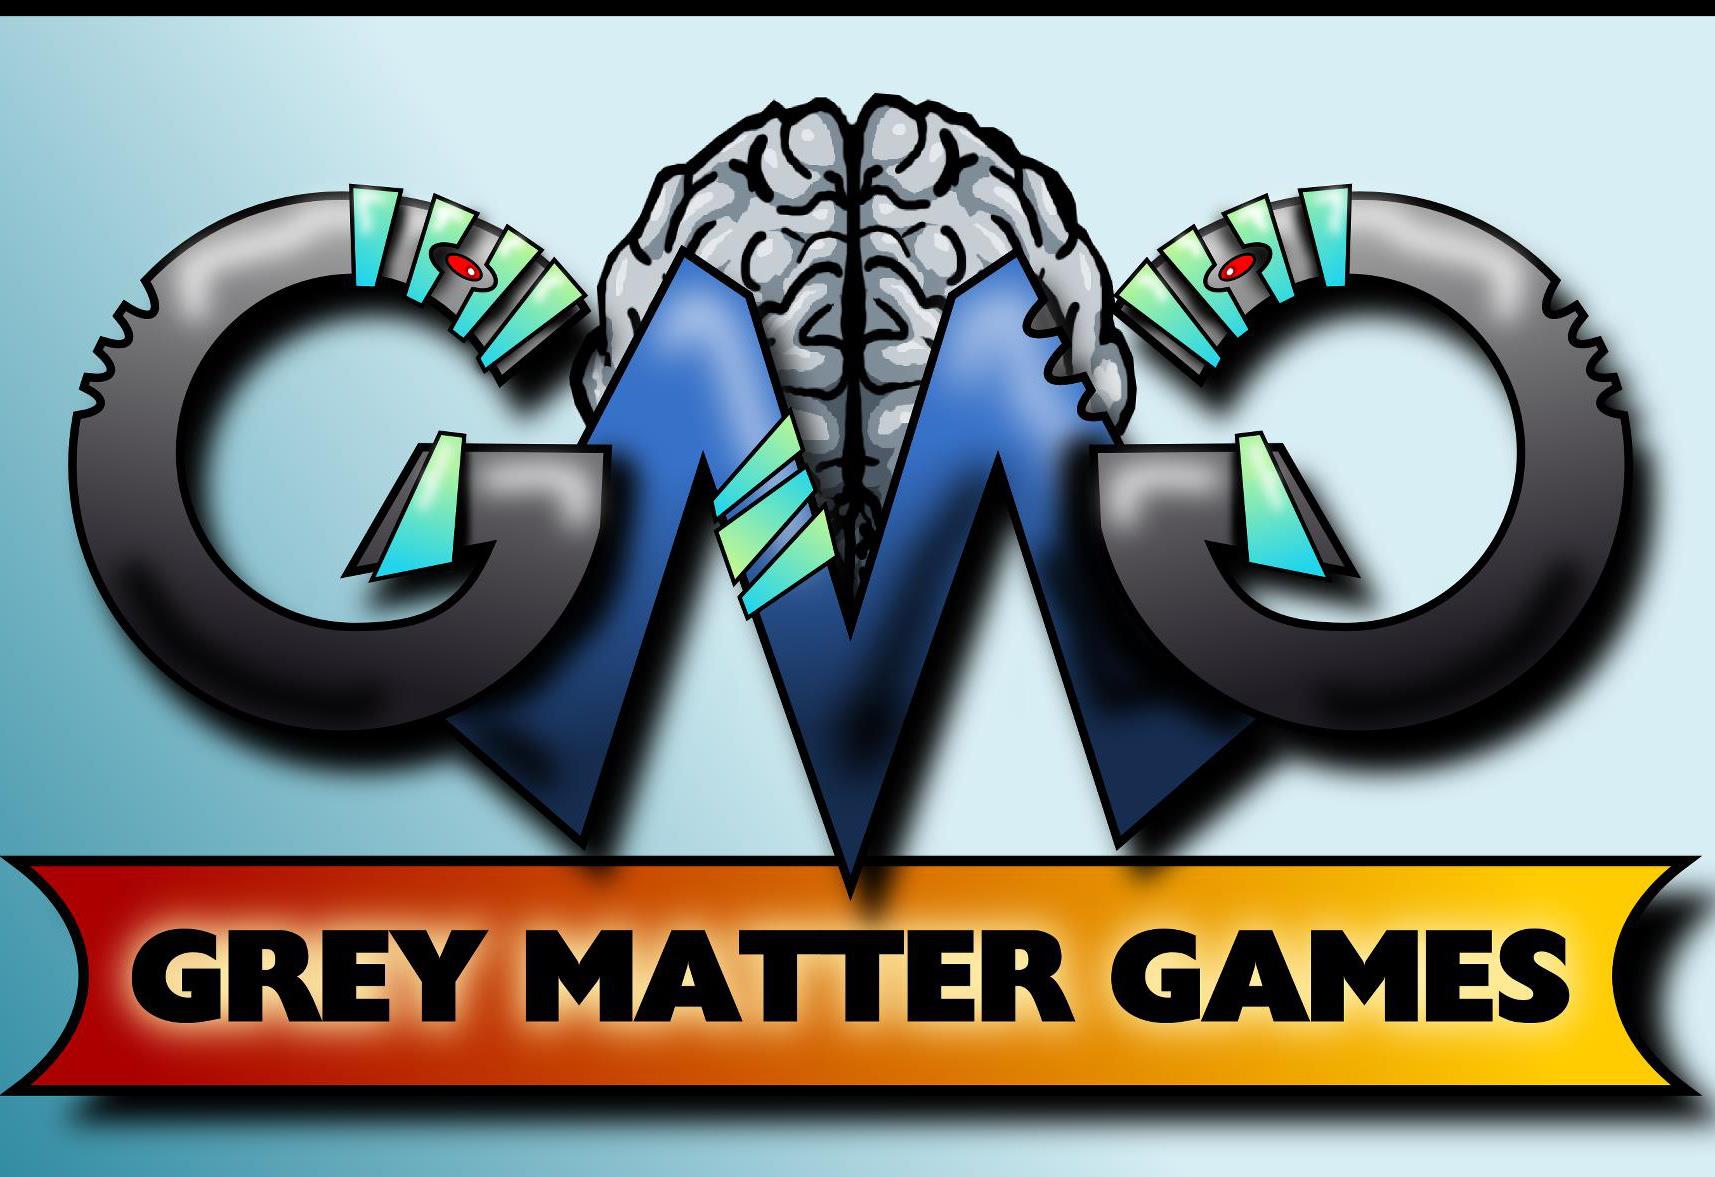 GreyMatterGames